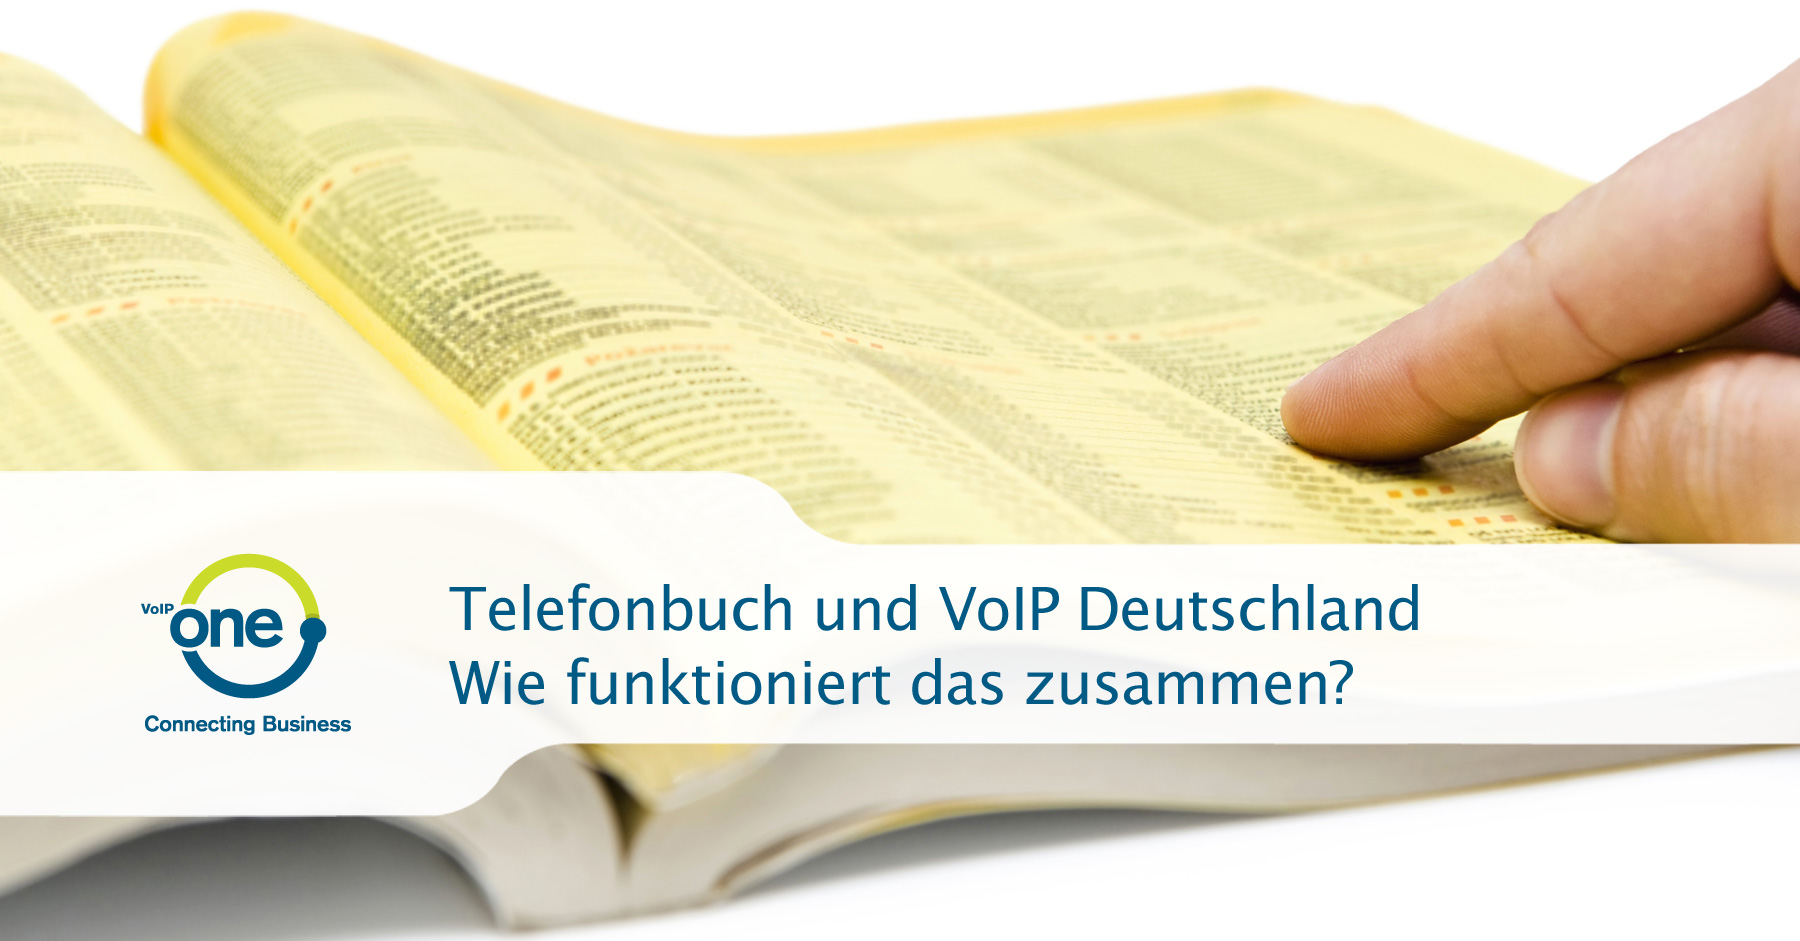 Telefonbuch und VoIP Deutschland - Wie funktioniert das zusammen?